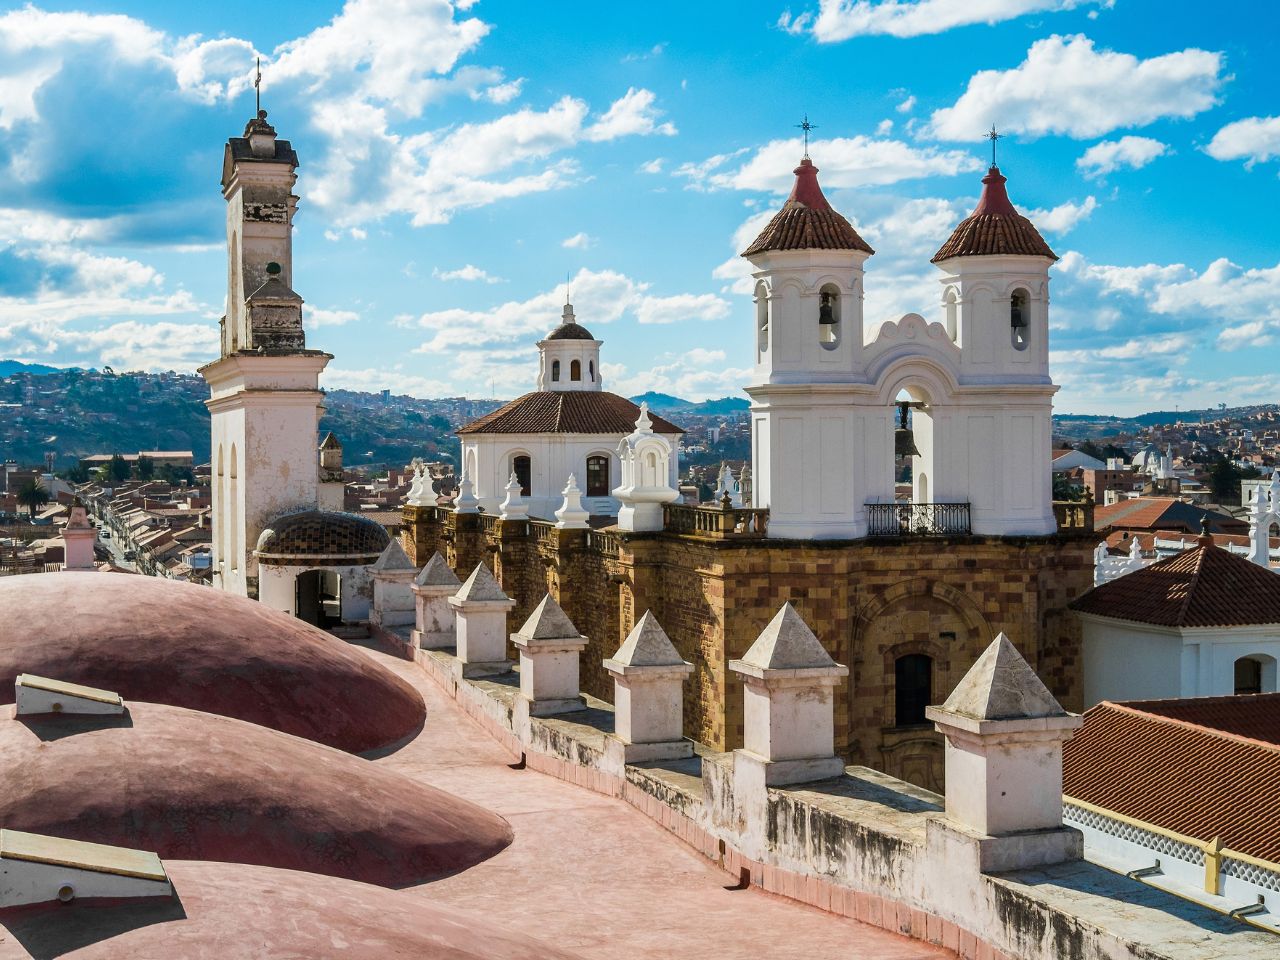 Reiseziele in Südamerika: Sucre